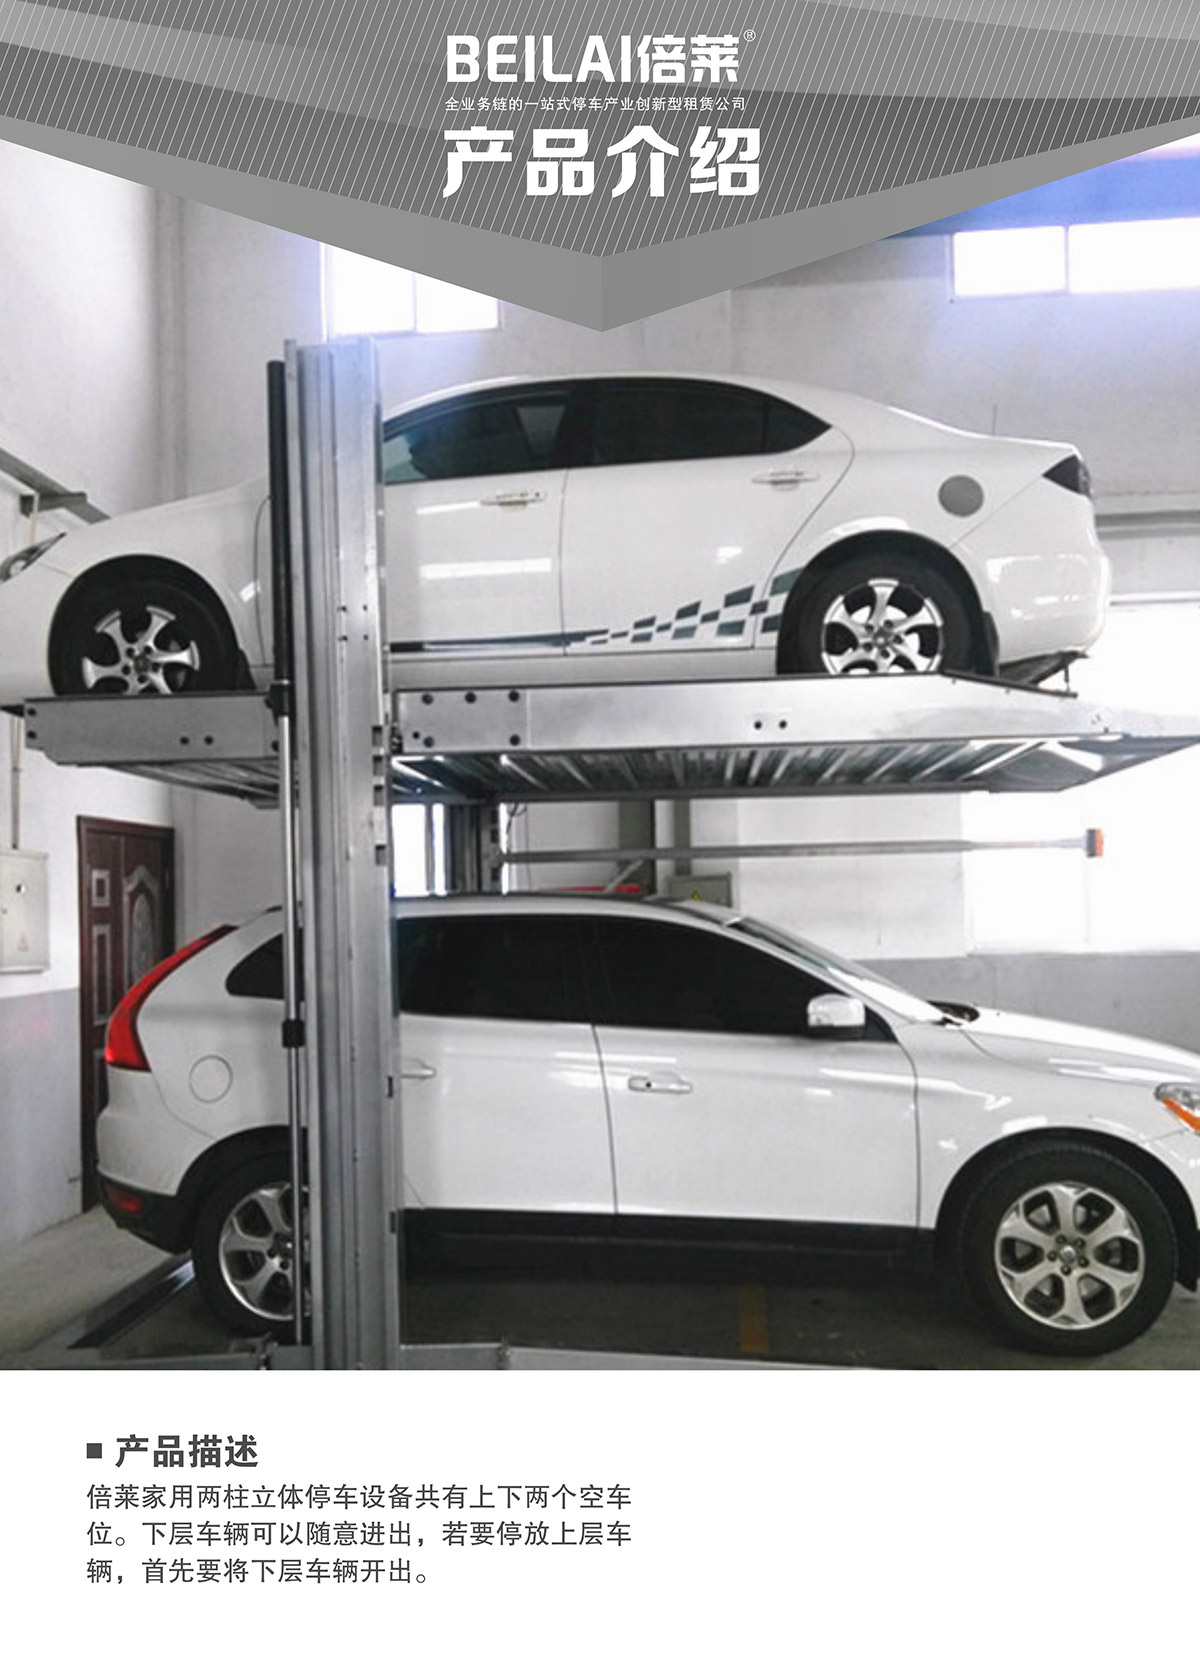 机械车库租赁两柱简易升降机械停车设备产品介绍.jpg